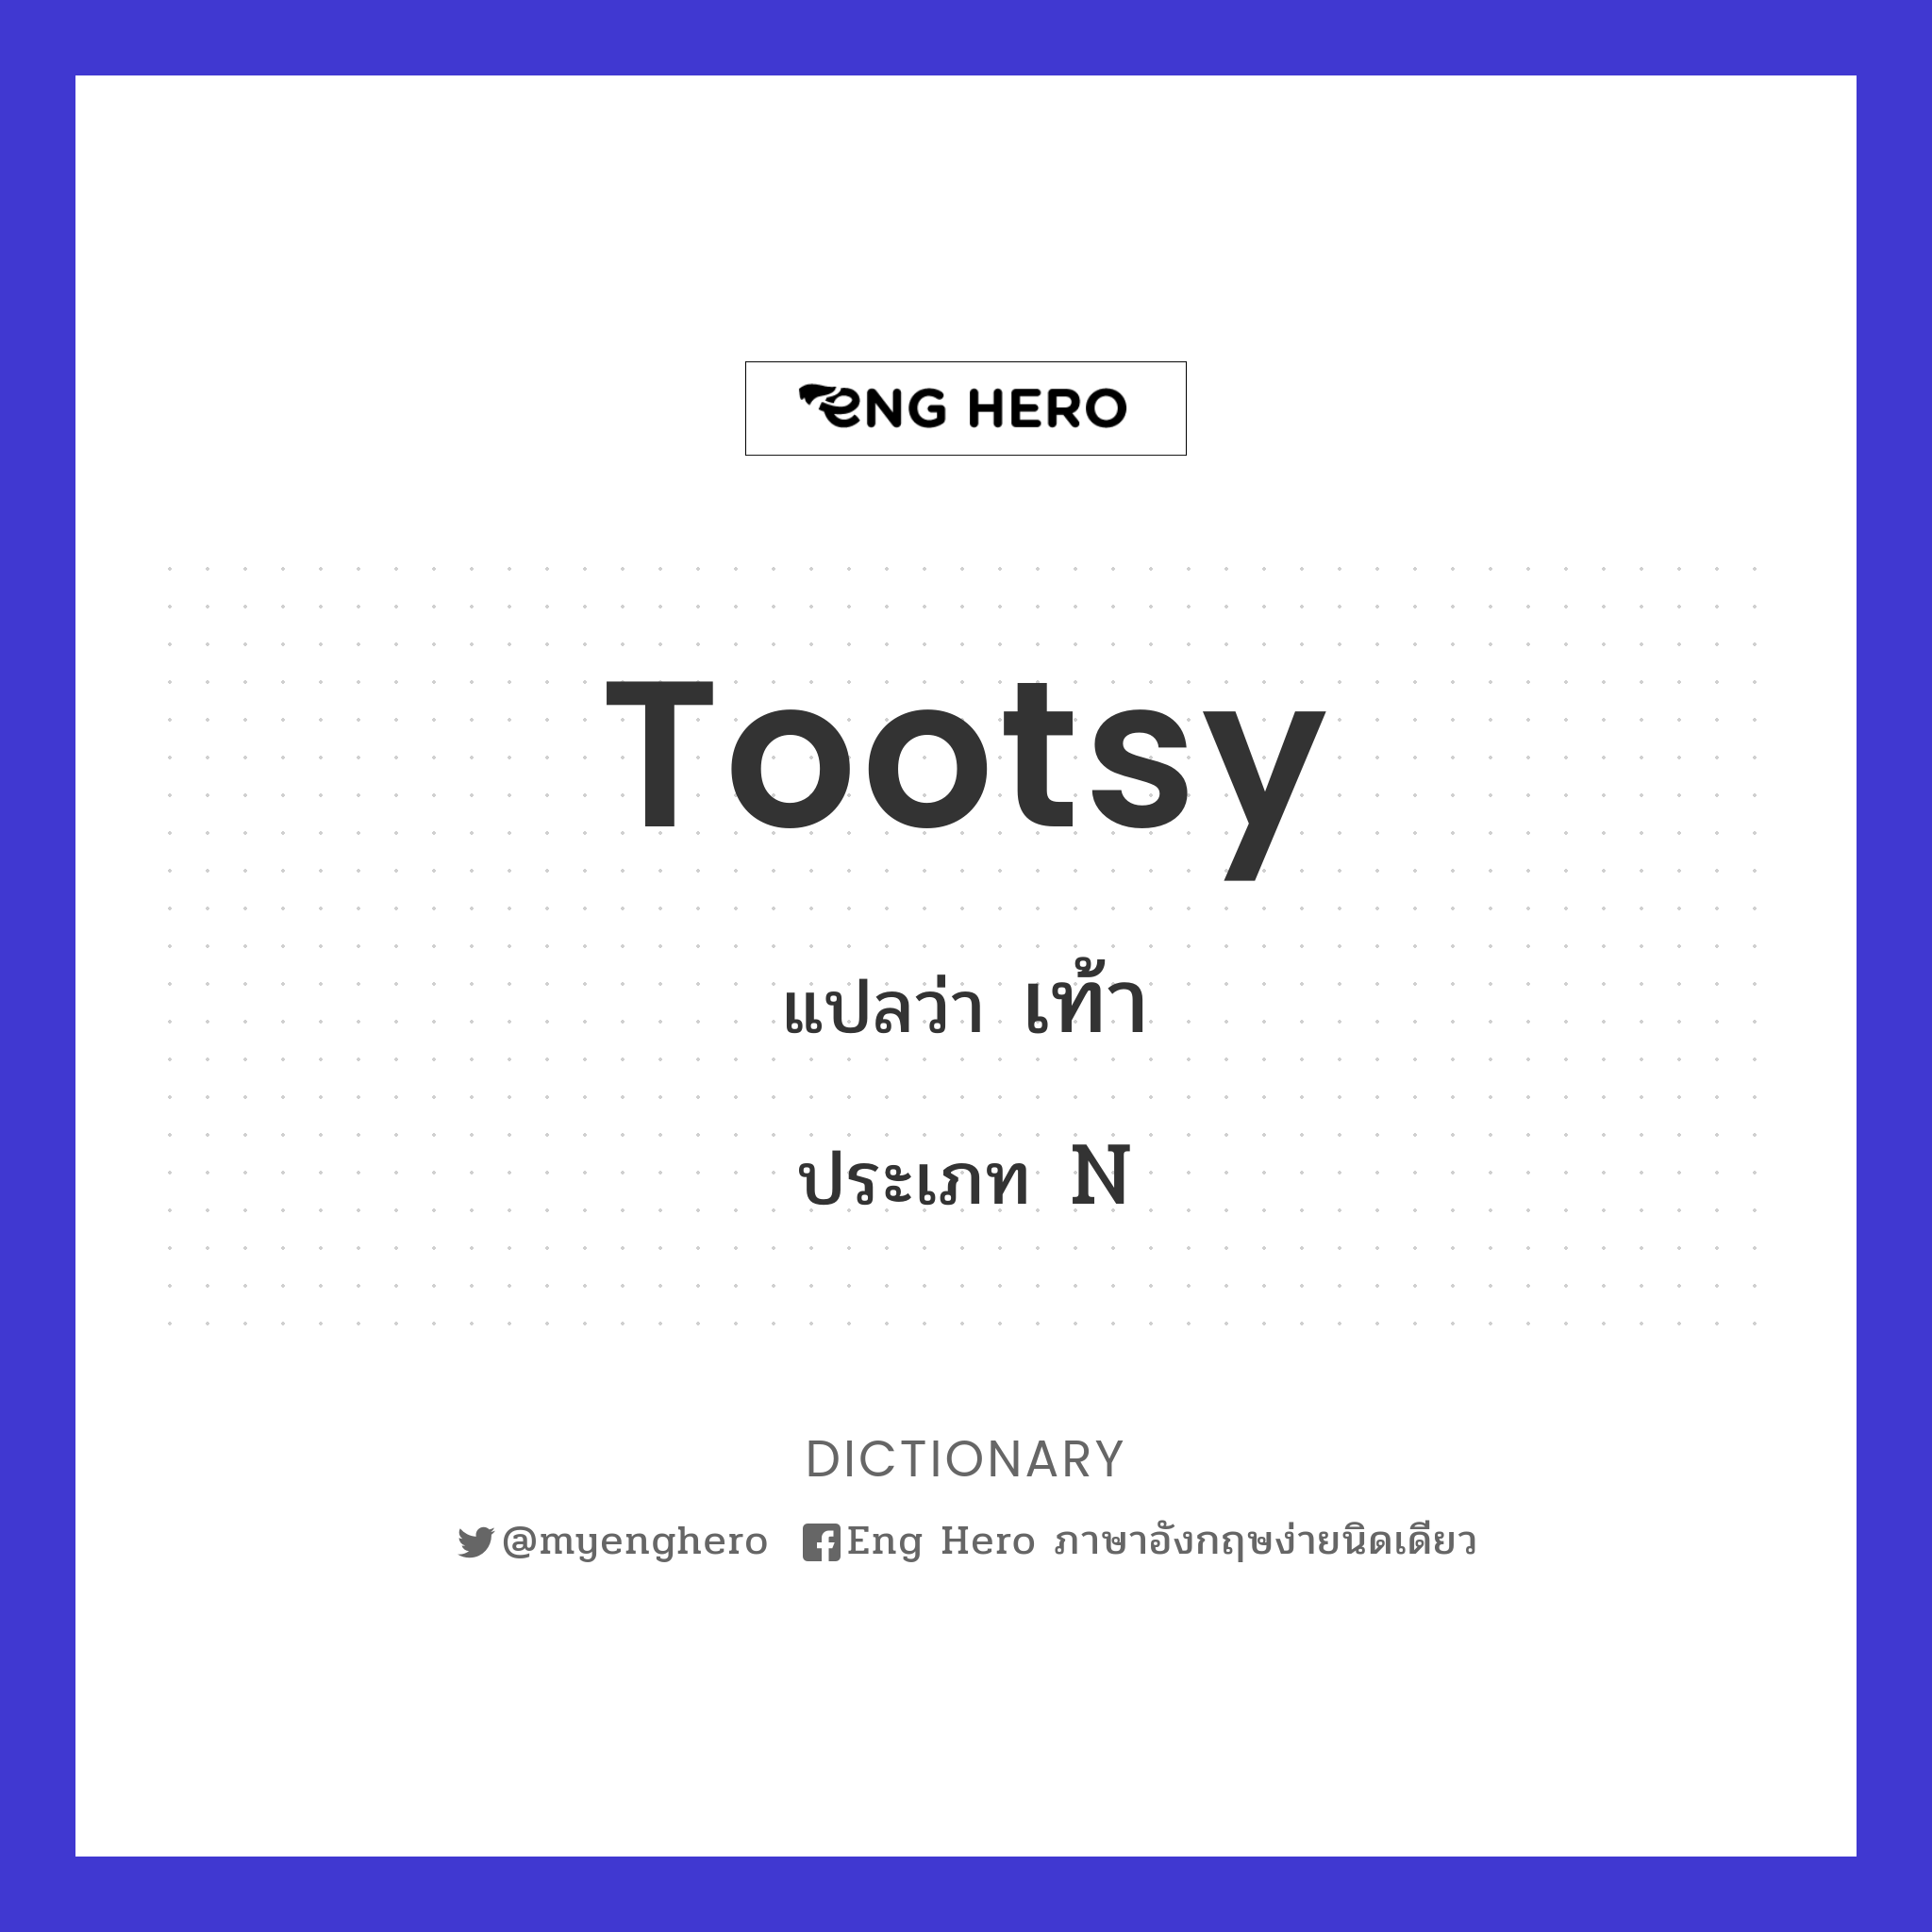 tootsy